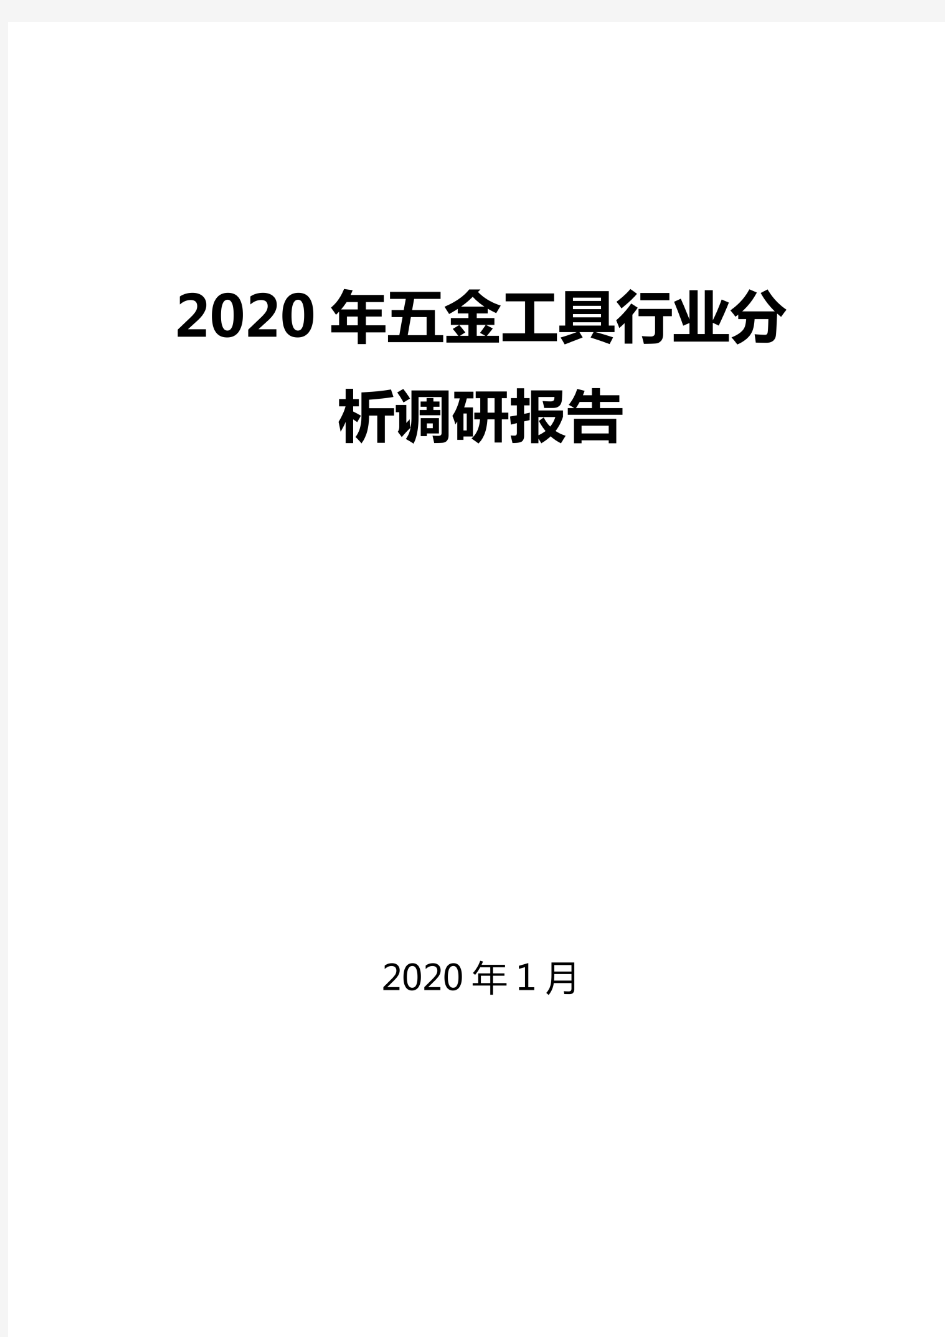 2020五金工具行业分析调研报告